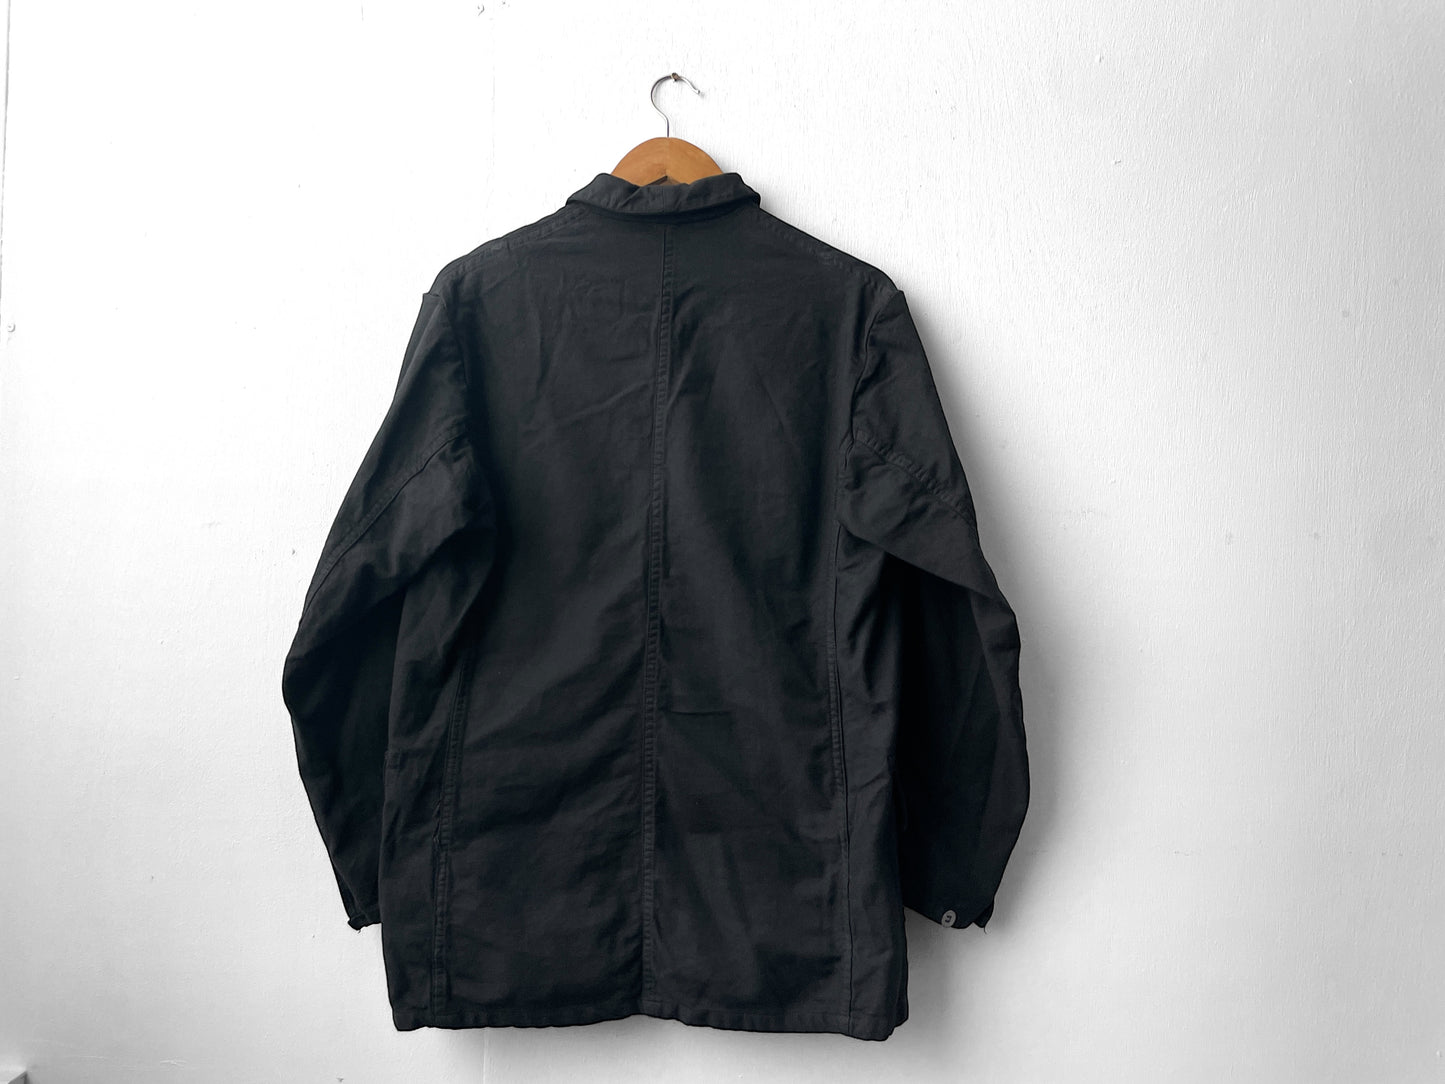 Vintage Black Military Jacket